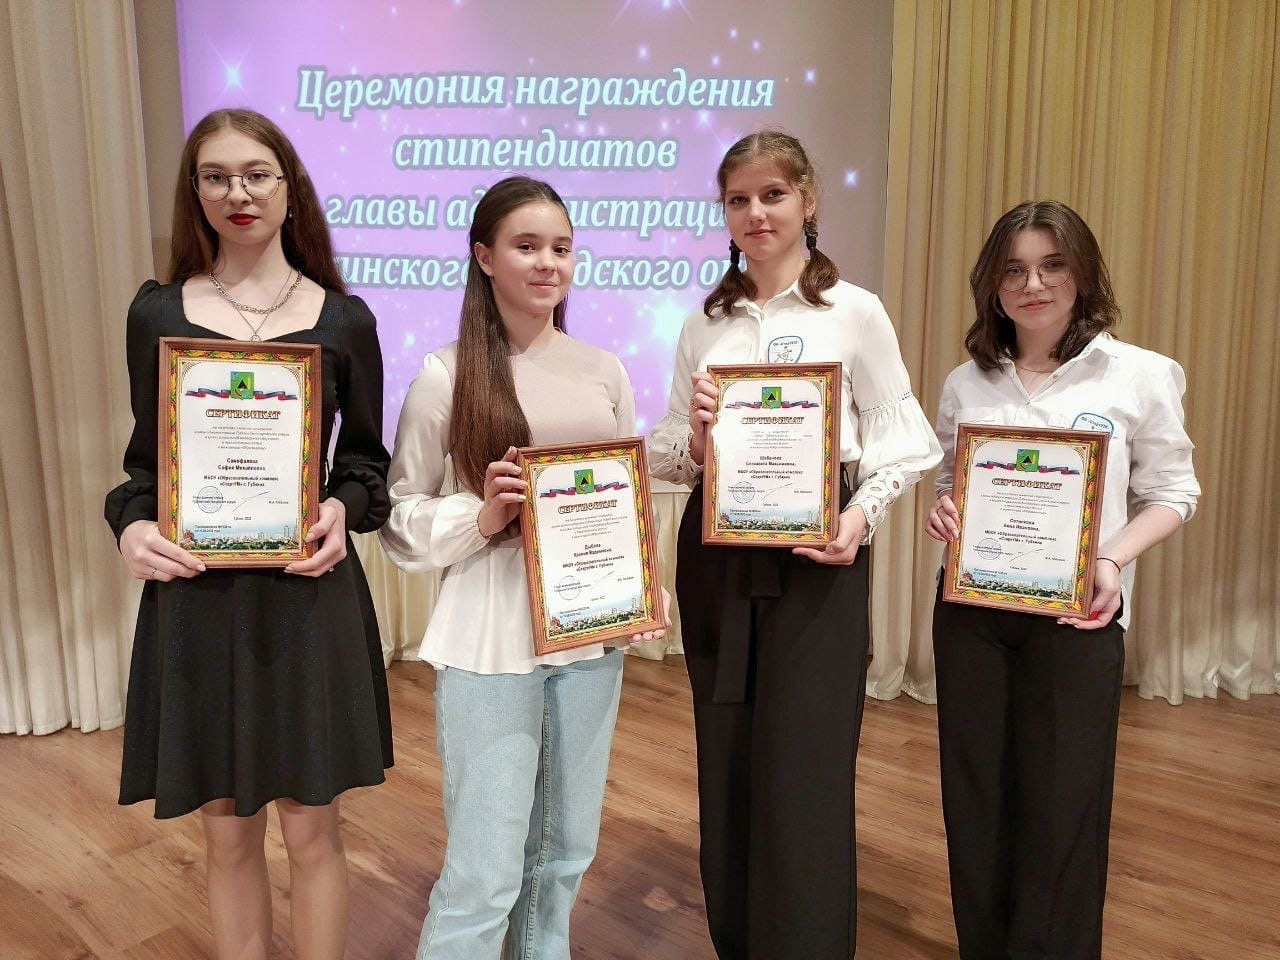 Награждения стипендиатов главы администрации Губкинского городского округа